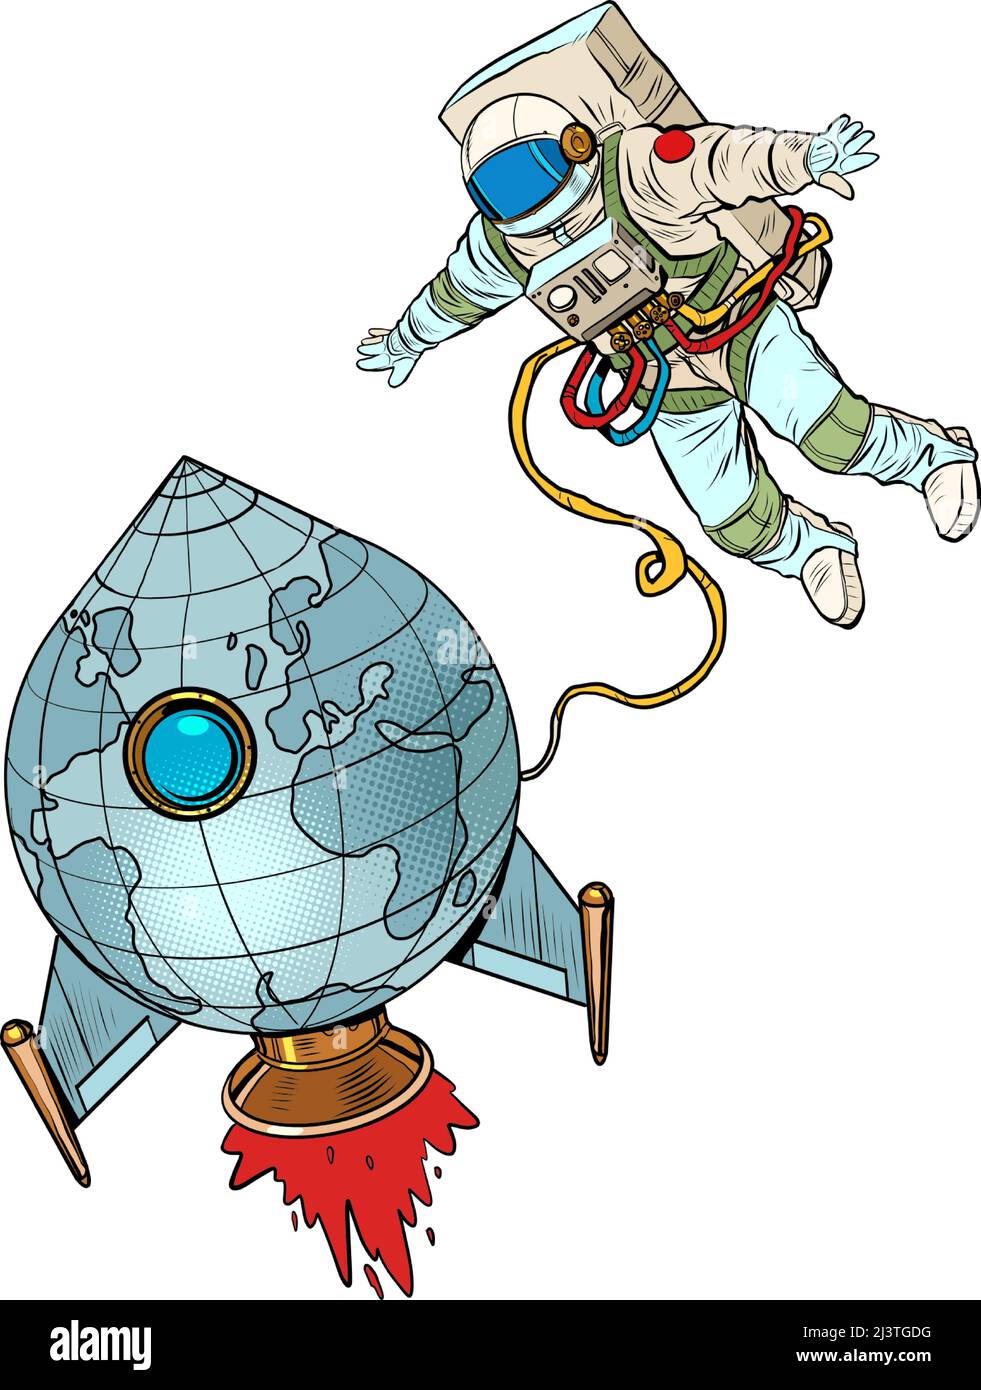 Der Planet Erde ist wie eine Rakete und ein Astronaut fliegt im All. Die Menschheit und das Universum Konzept. Pop Art Retro Vektor Illustration 50s 60s Kitsch Stock Vektor